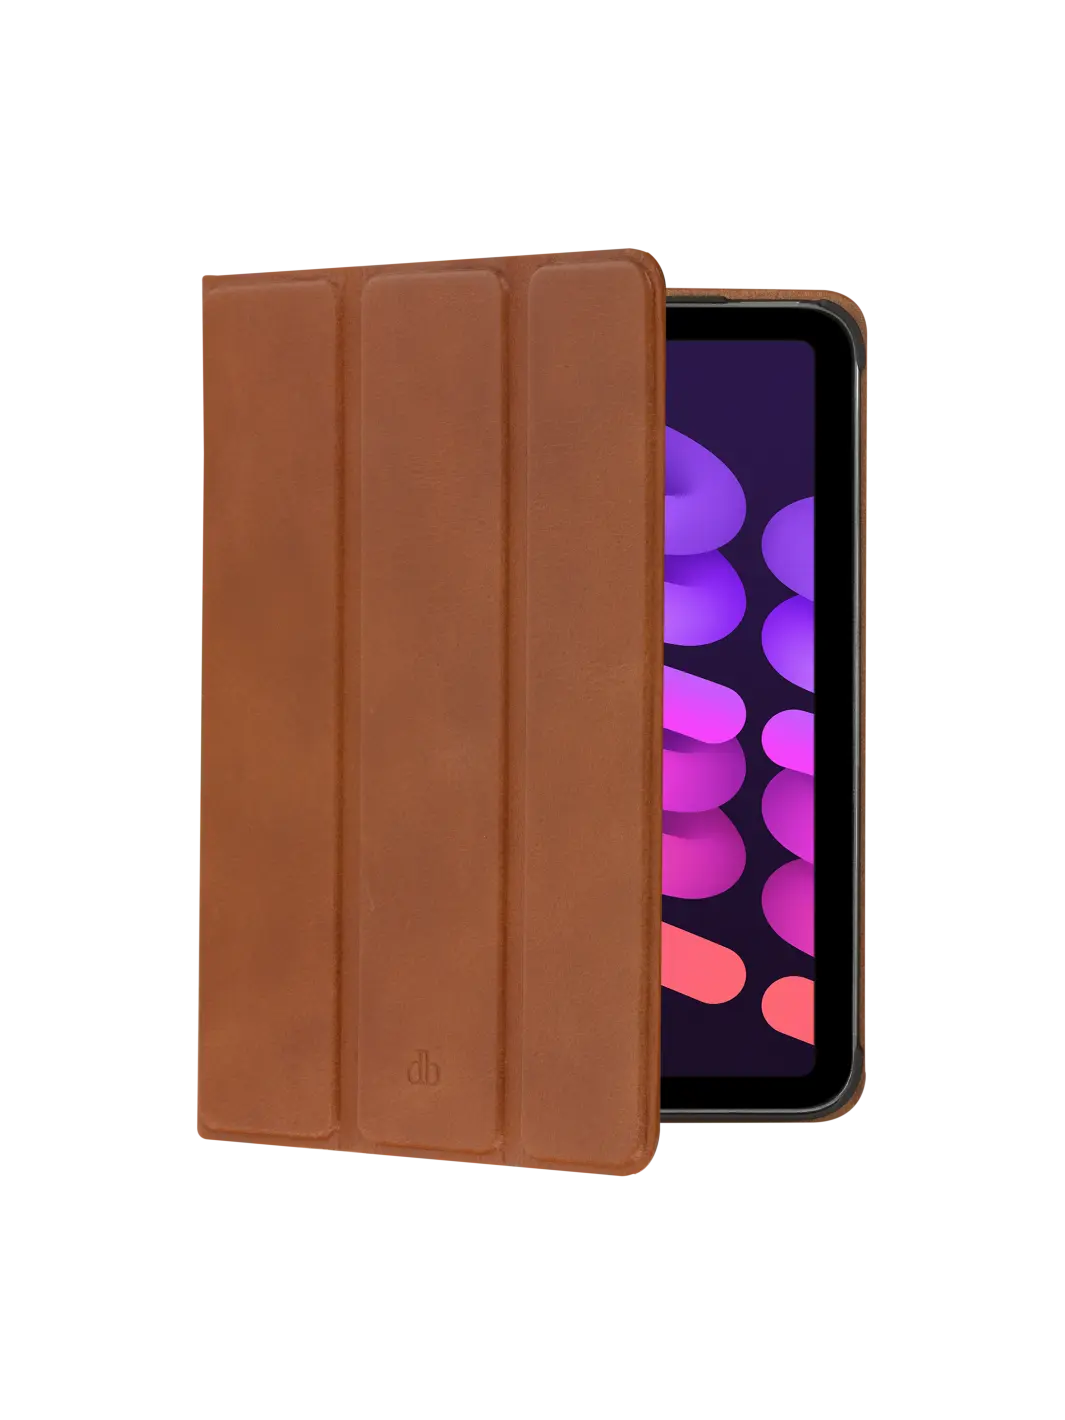 Risskov iPad case Tan iPad mini (6th Gen) iPad Cases